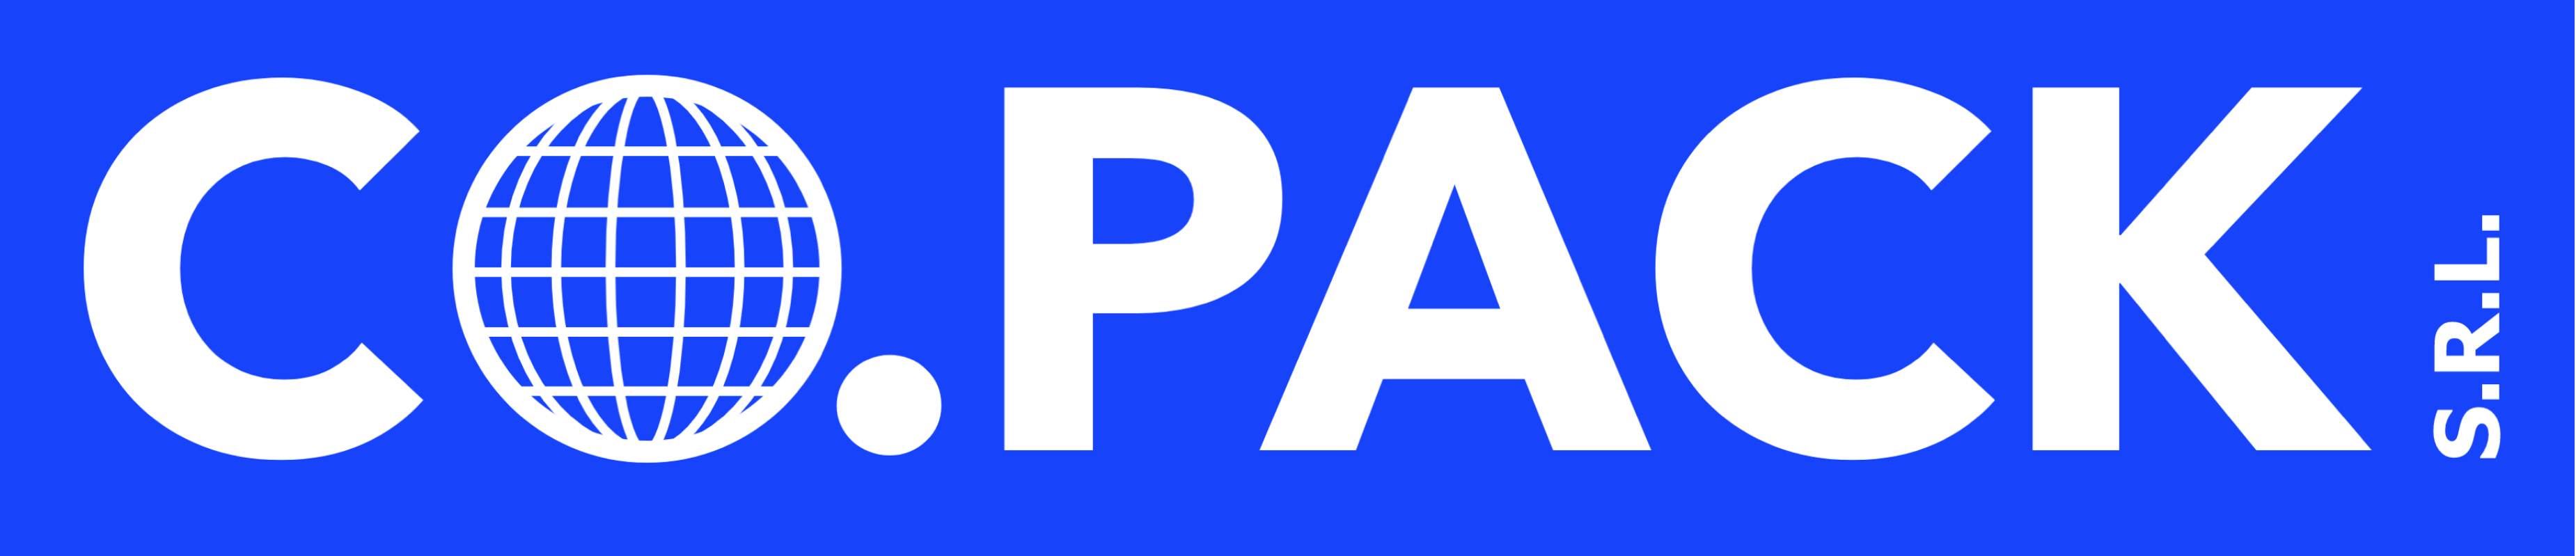 Copack logo